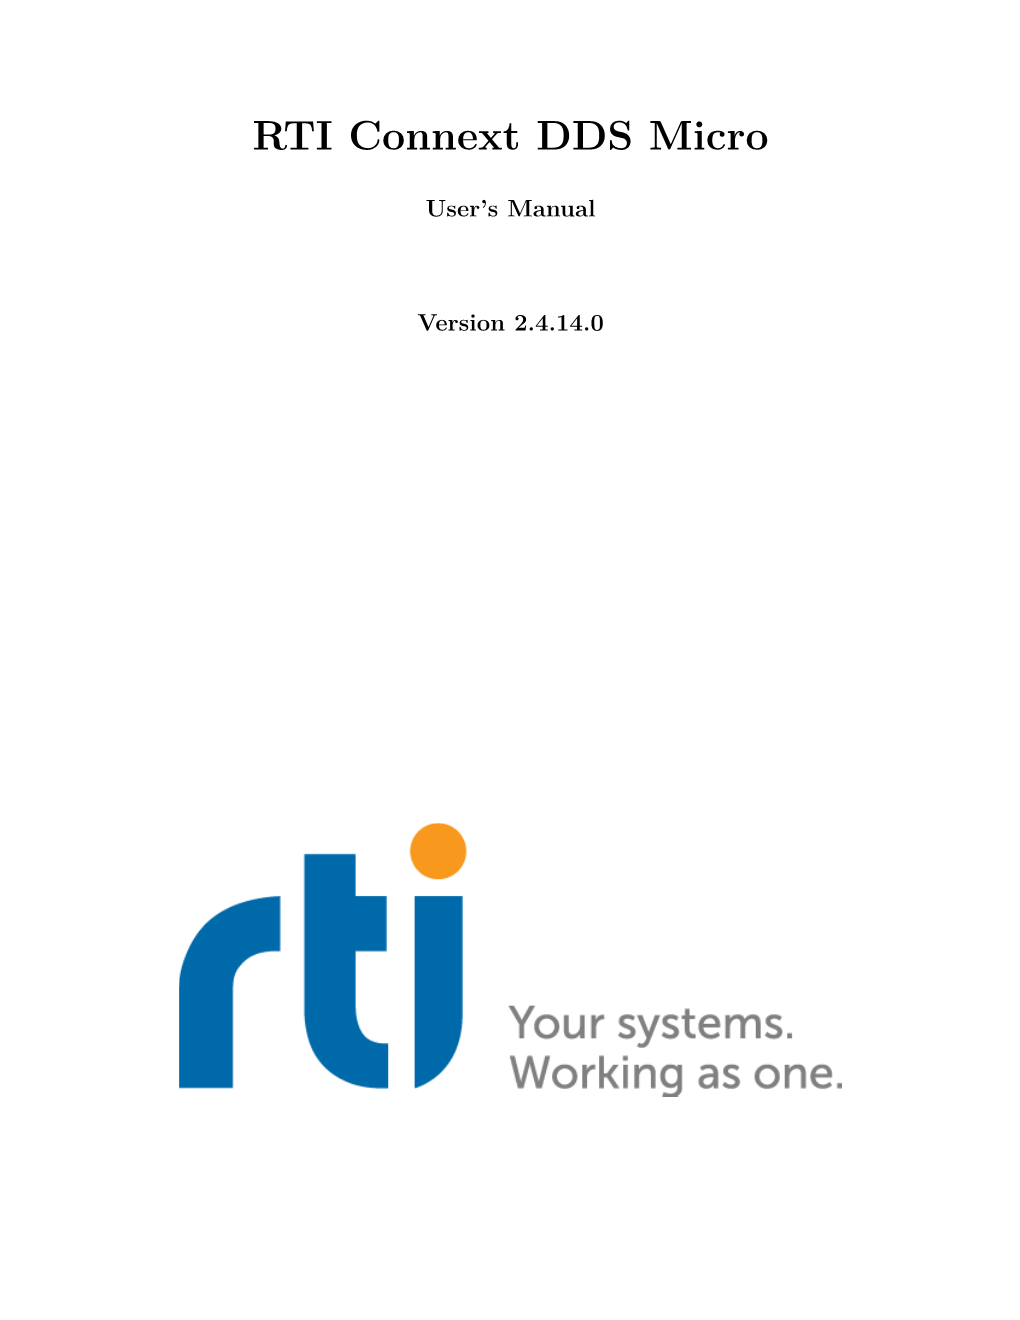 RTI Connext DDS Micro